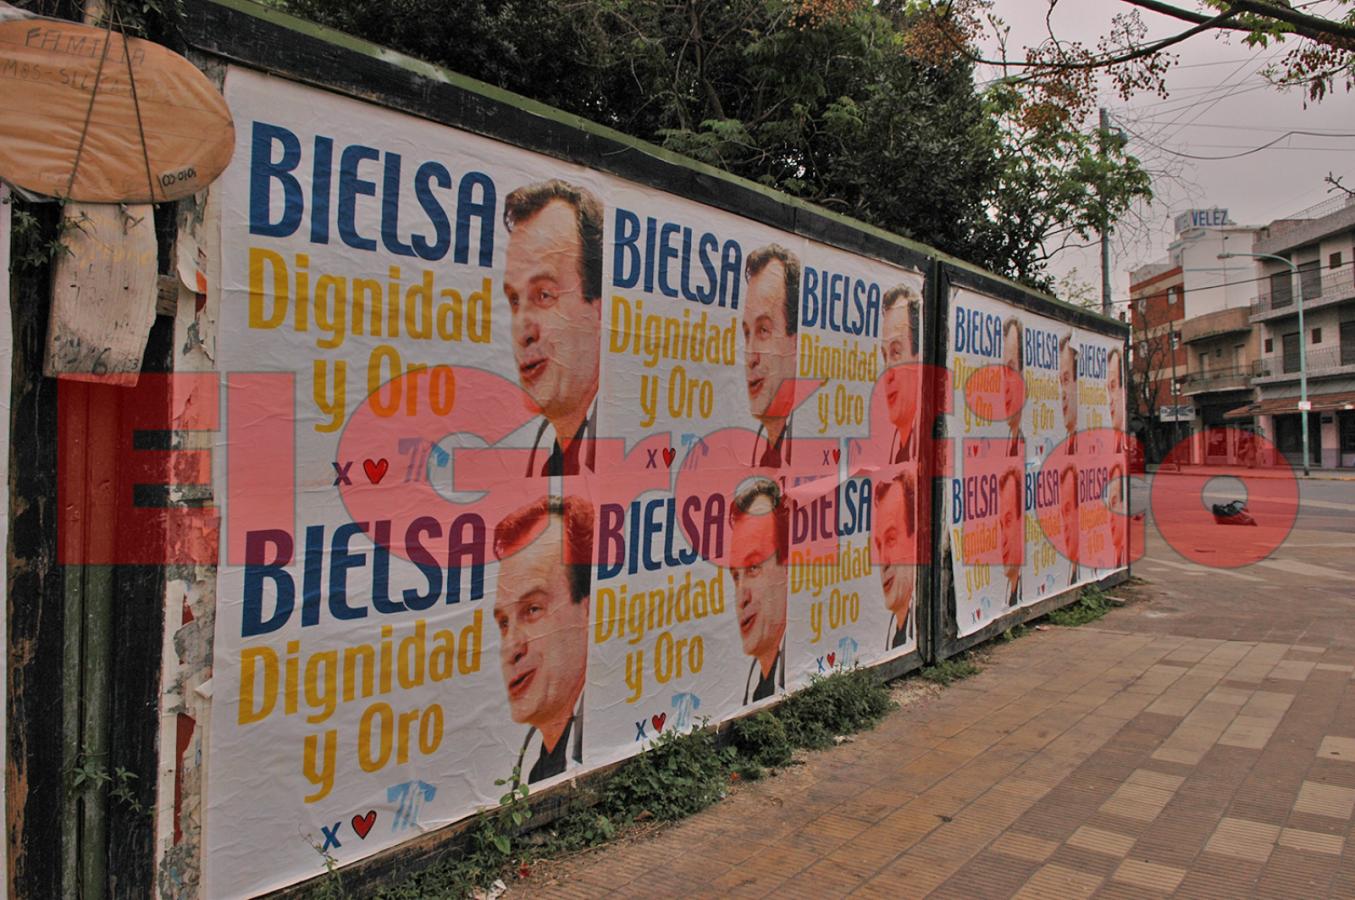 Imagen Dignidad y Oro. Los afiches empapelaron Buenos Aires tras la obtención de la medalla de oro en Atenas 2004